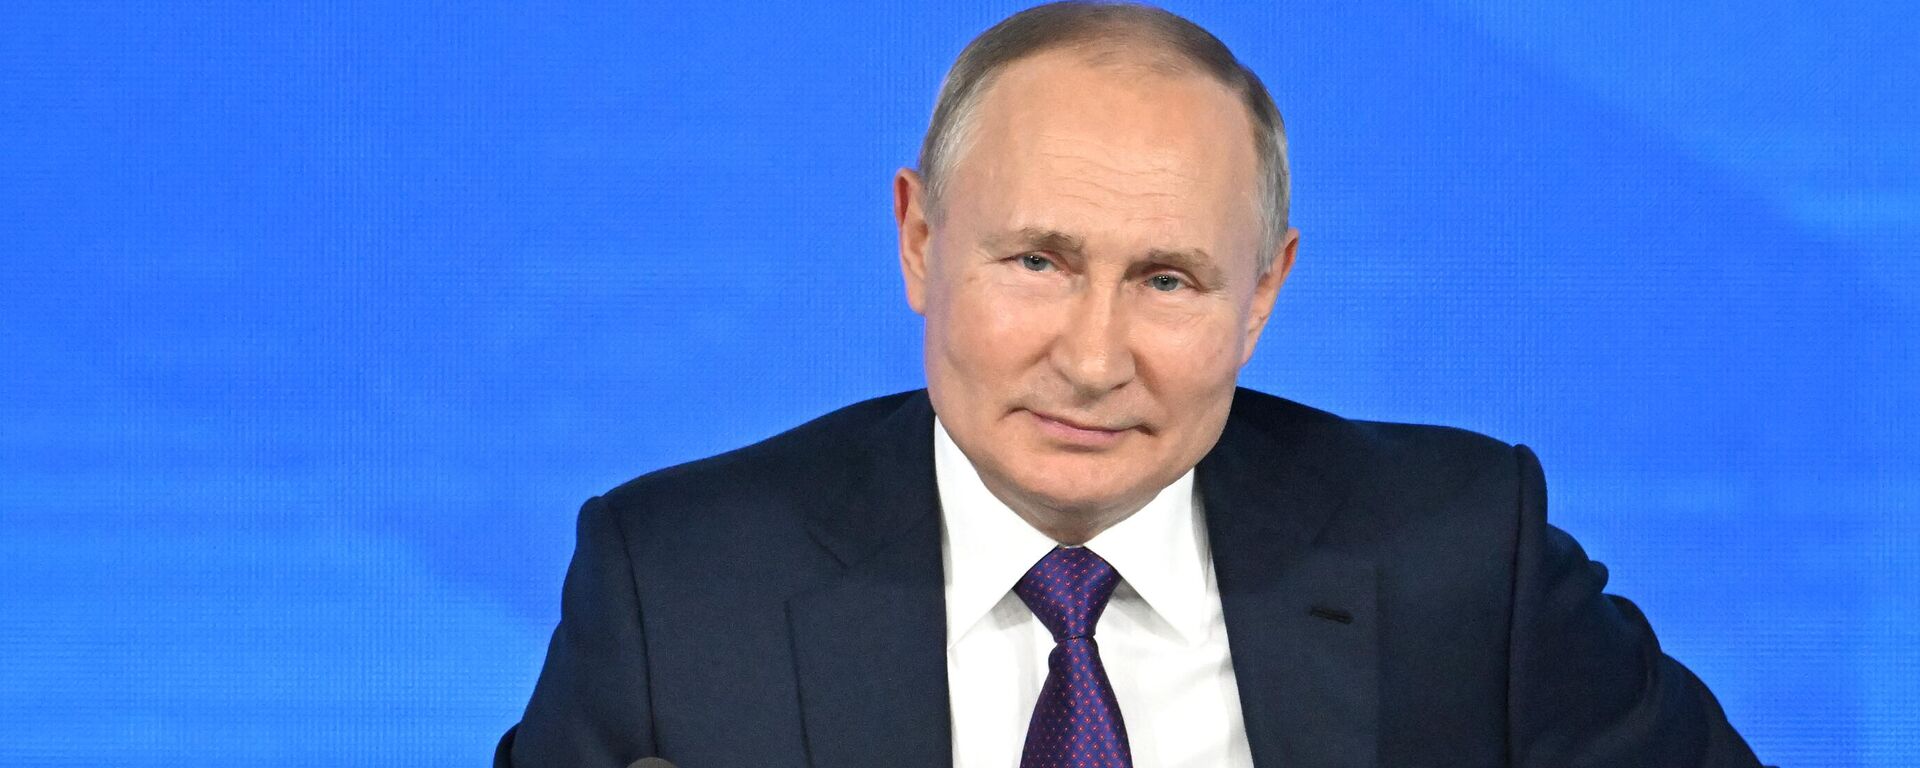 Vladímir Putin, presidente de Rusia, durante la gran conferencia de prensa anual en Moscú (Rusia), el 23 de diciembre del 2021 - Sputnik Mundo, 1920, 24.05.2022